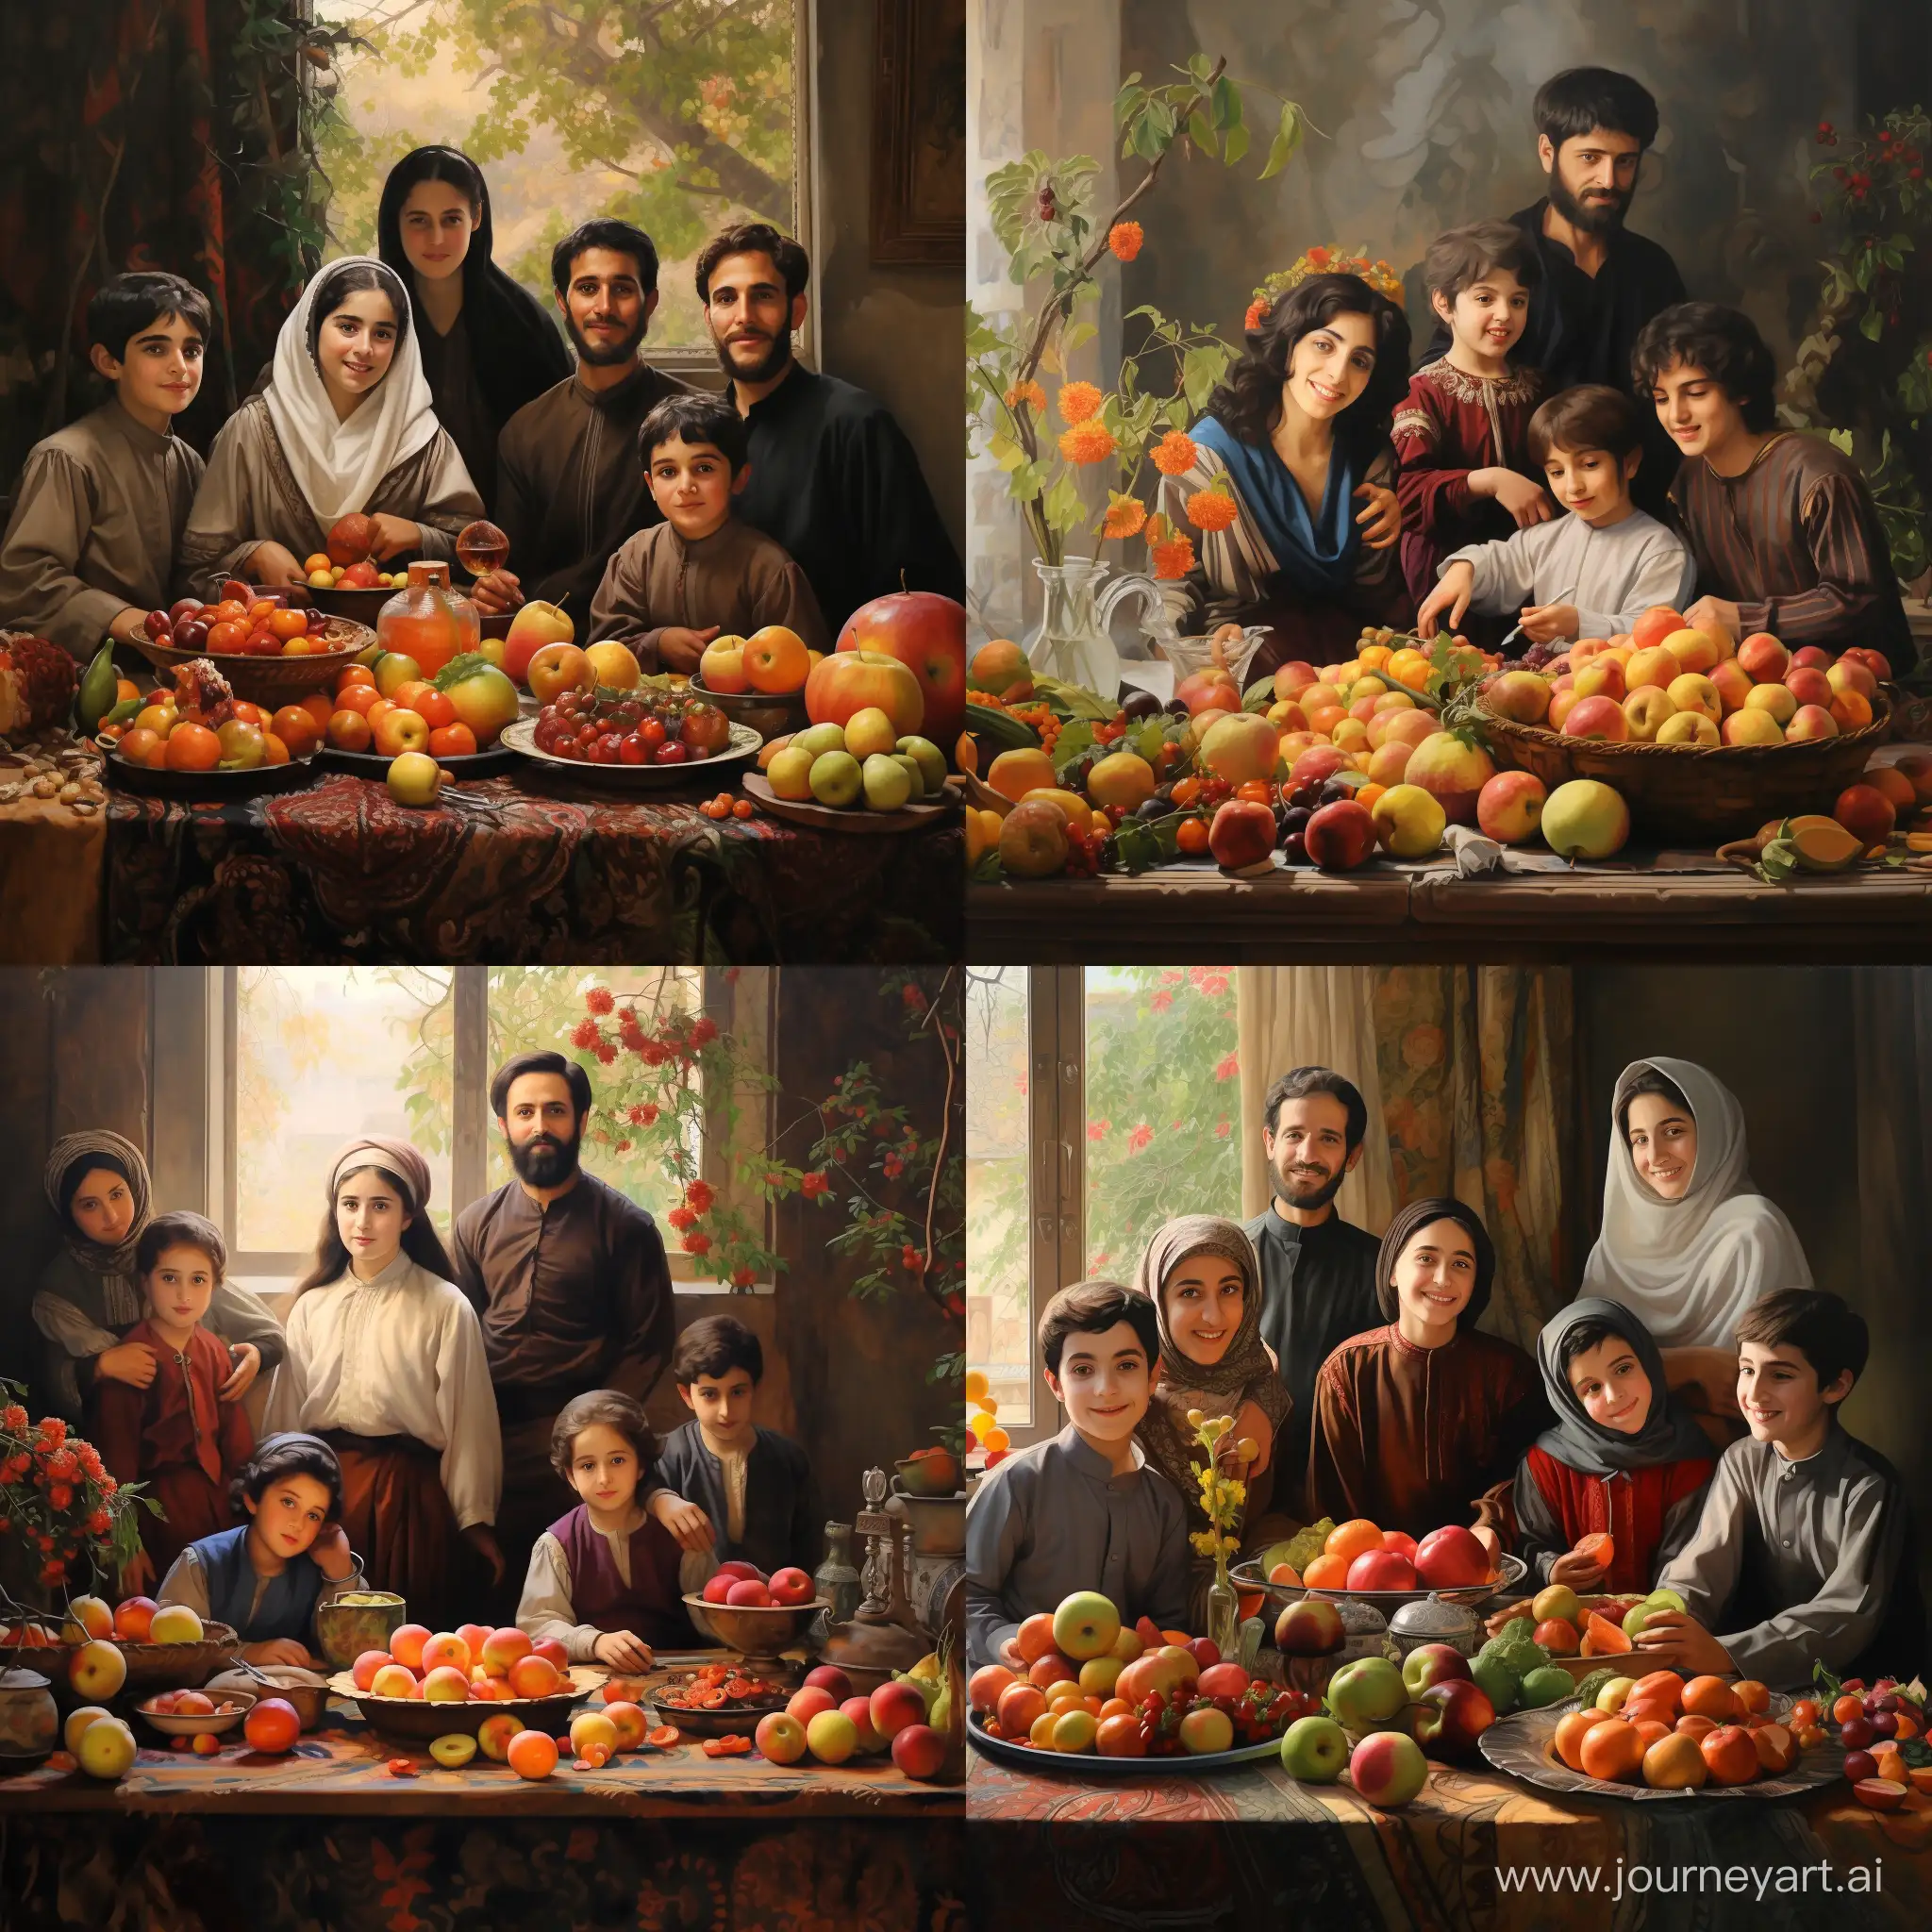 Joyful-Iranian-Family-Celebrating-Nowruz-with-Haftsin-and-Fruits